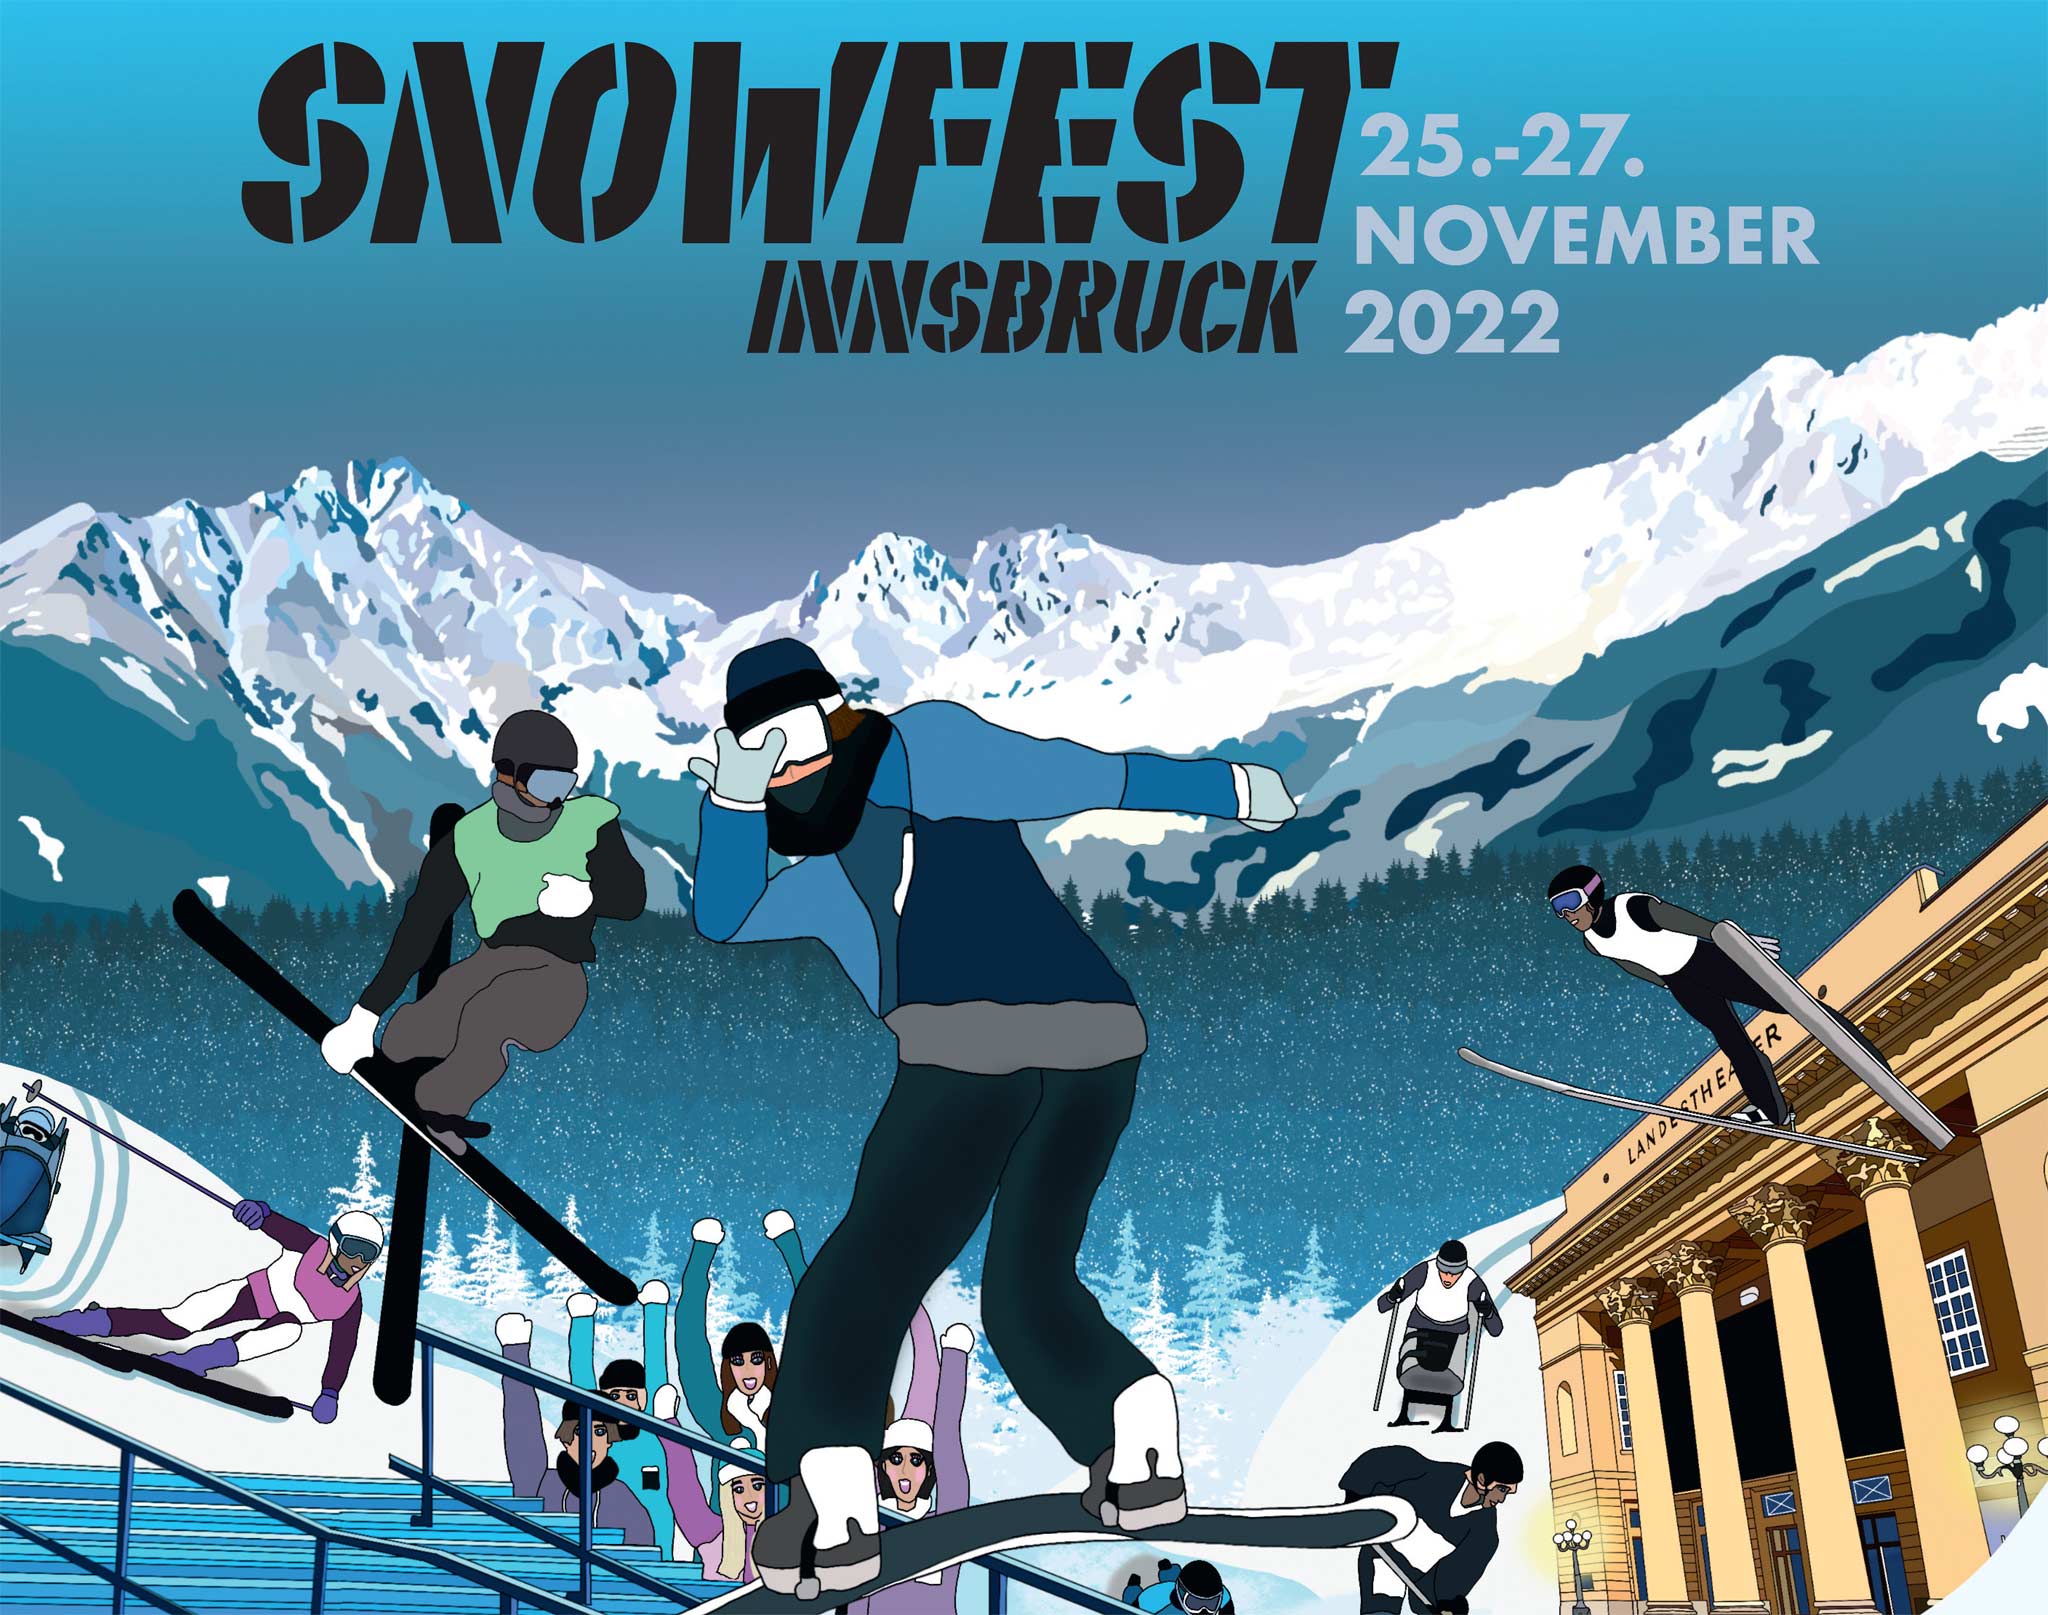 Snowfest 2022: Freeski City Rail Jam in Innsbruck